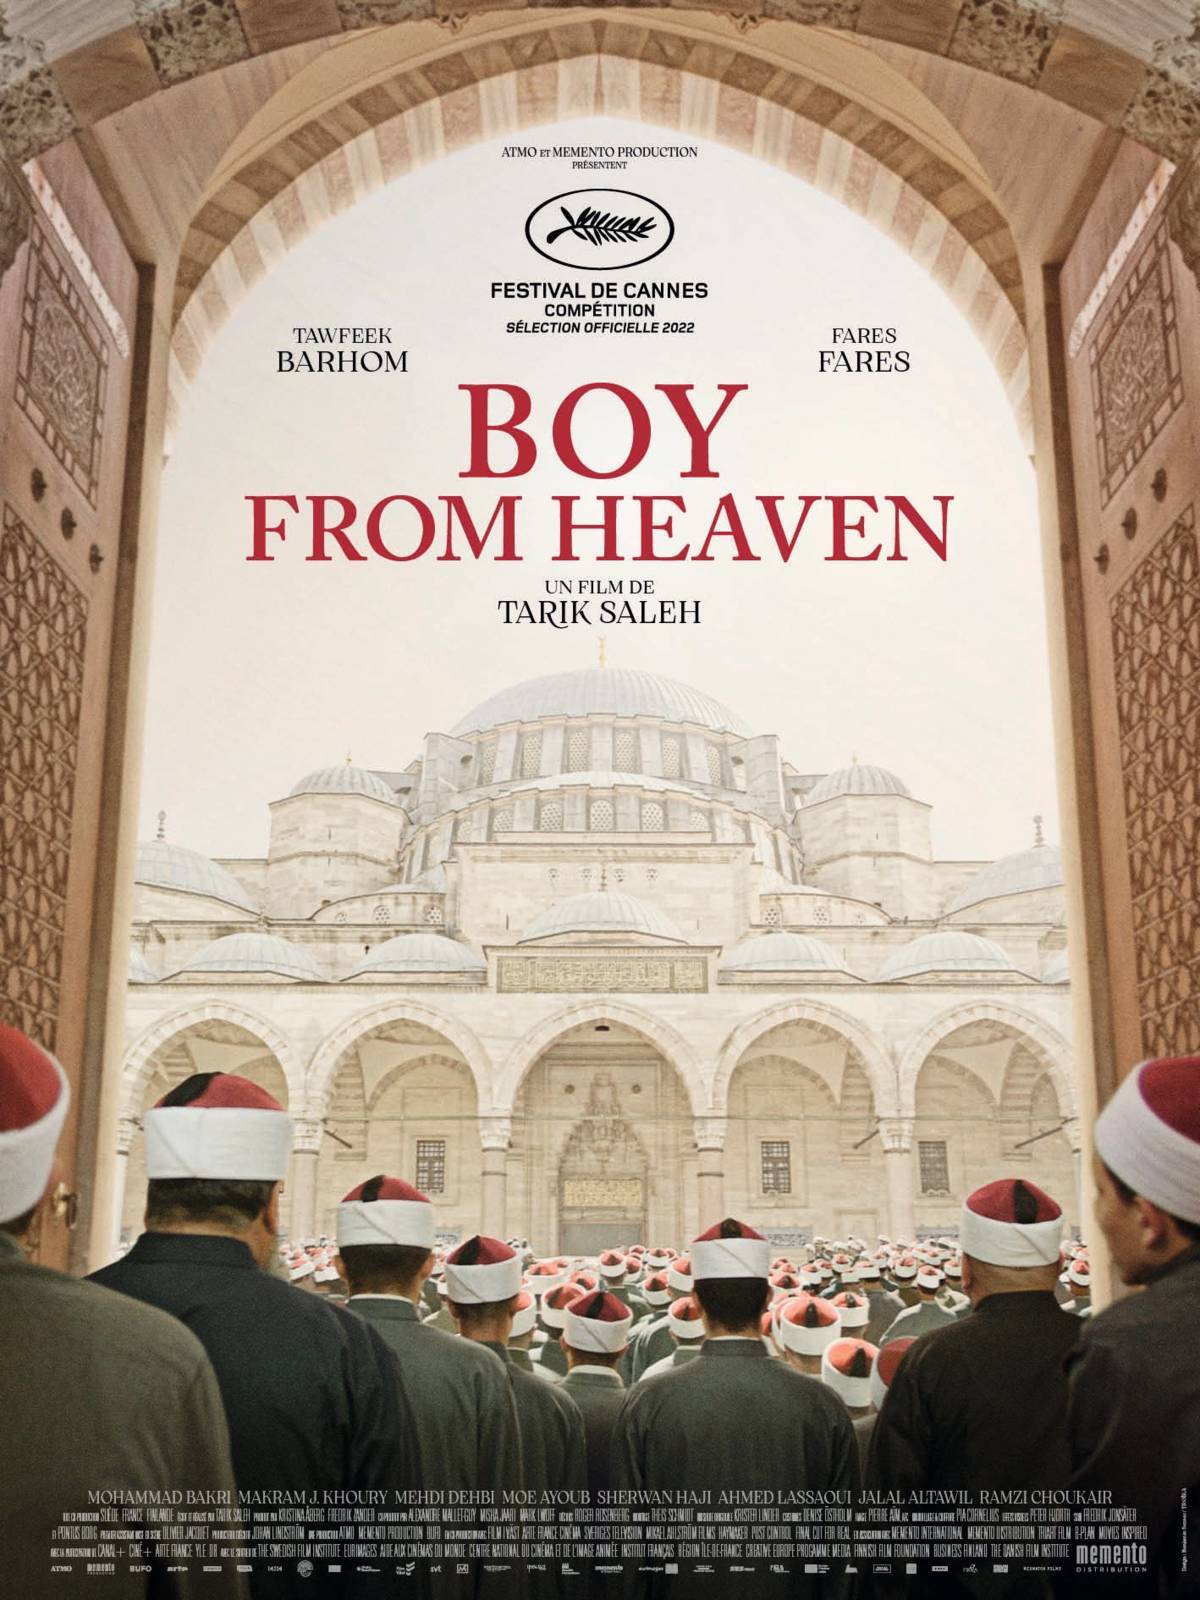 La conspiration du Caire (Boy from Heaven) |  Cinéma